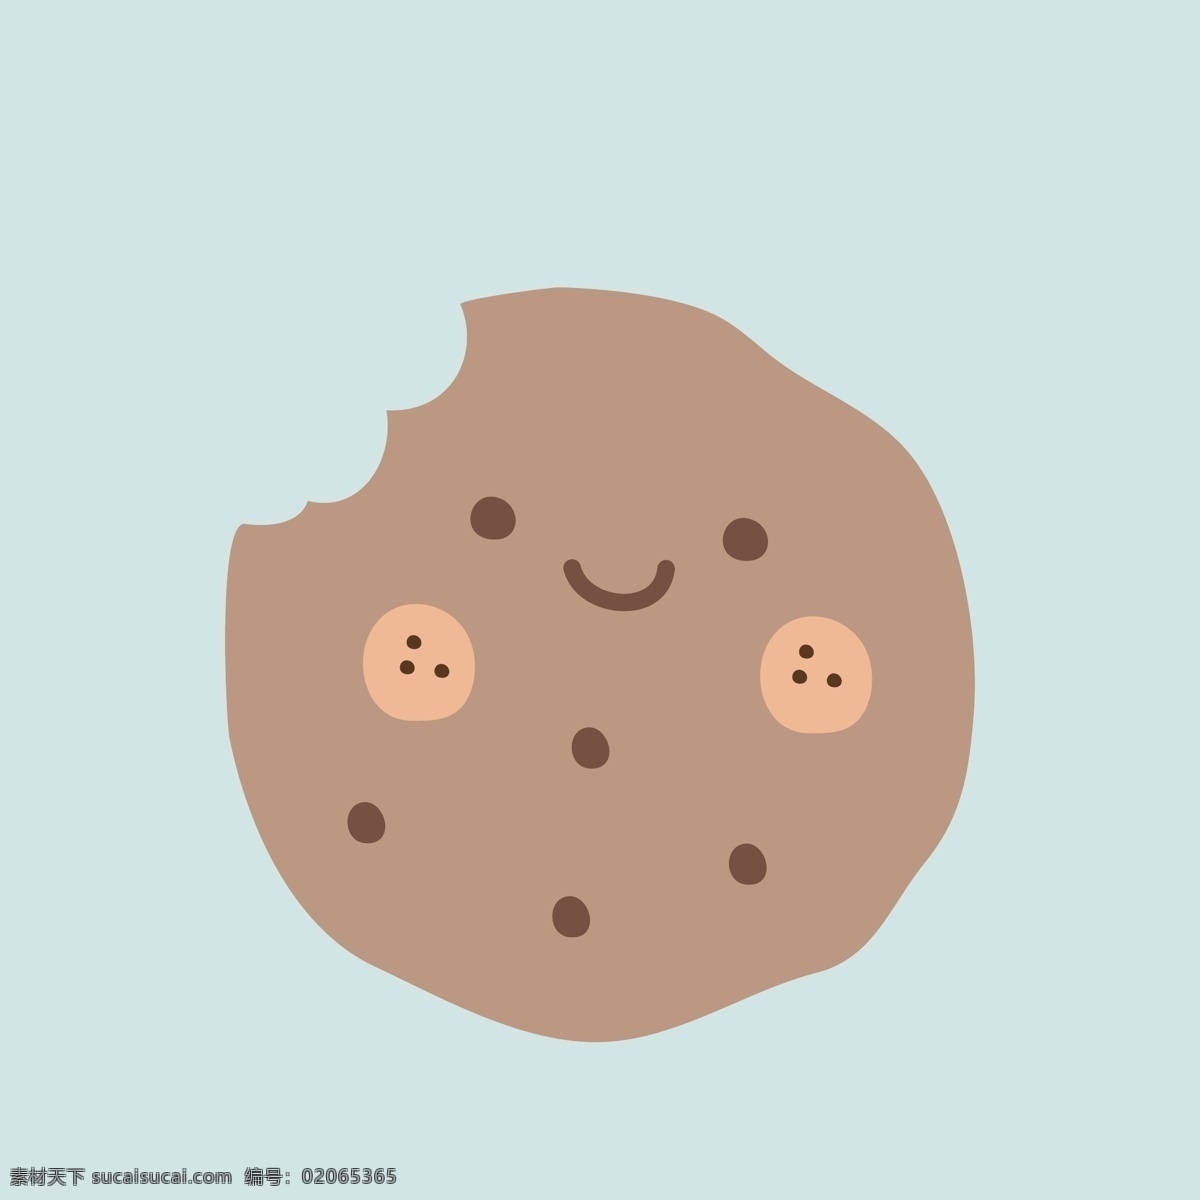 卡通饼干 饼干 卡通 可爱q版 豆奶 牛奶制品 拟人表情 图标菜单 包装 平面 矢量素材 q 版 拟人 食 材